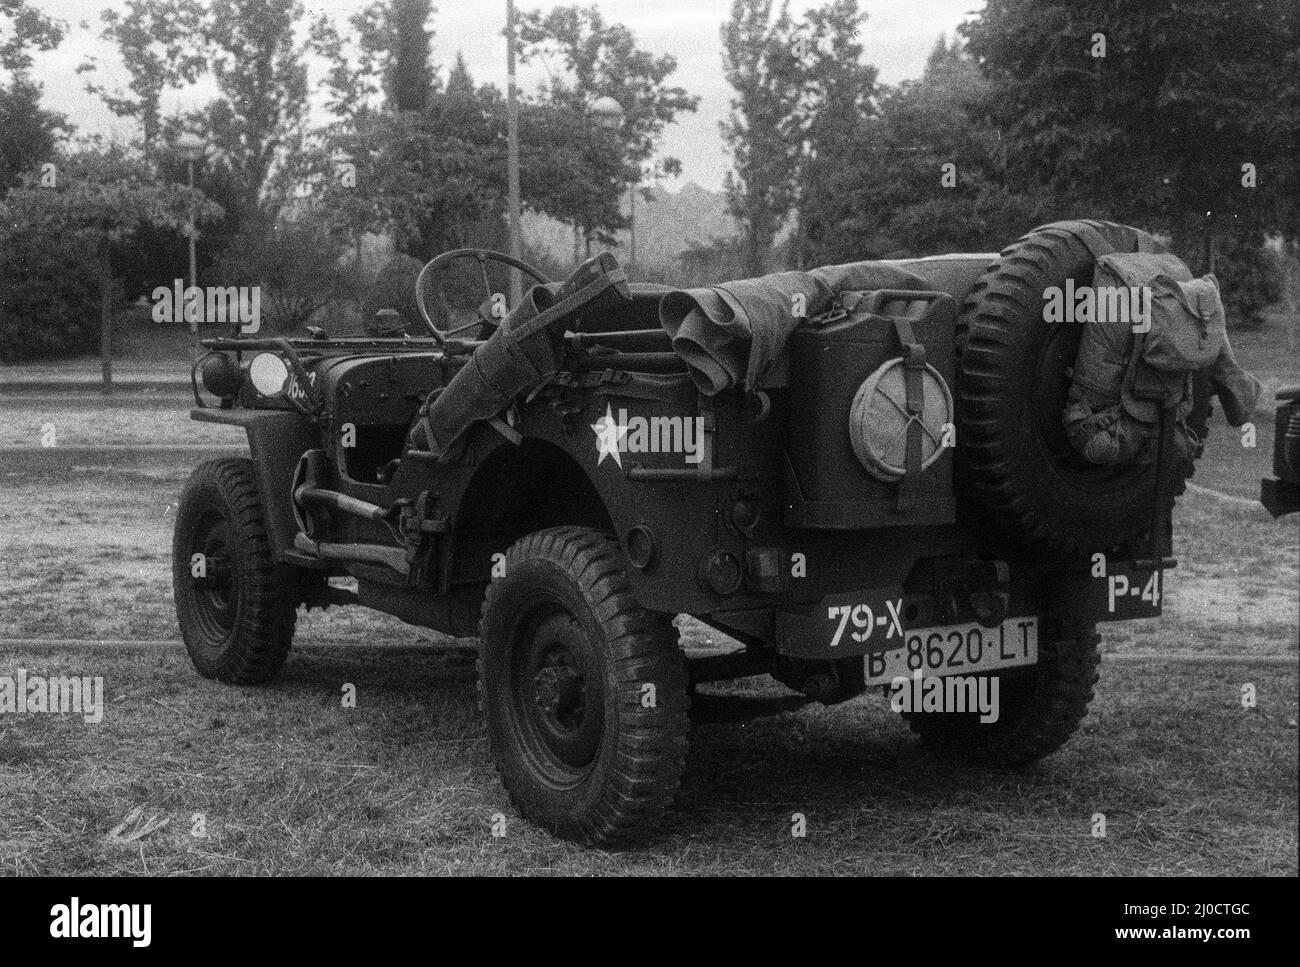 Gros plan d'un vus militaire classique Jeep Willys en niveaux de gris Banque D'Images